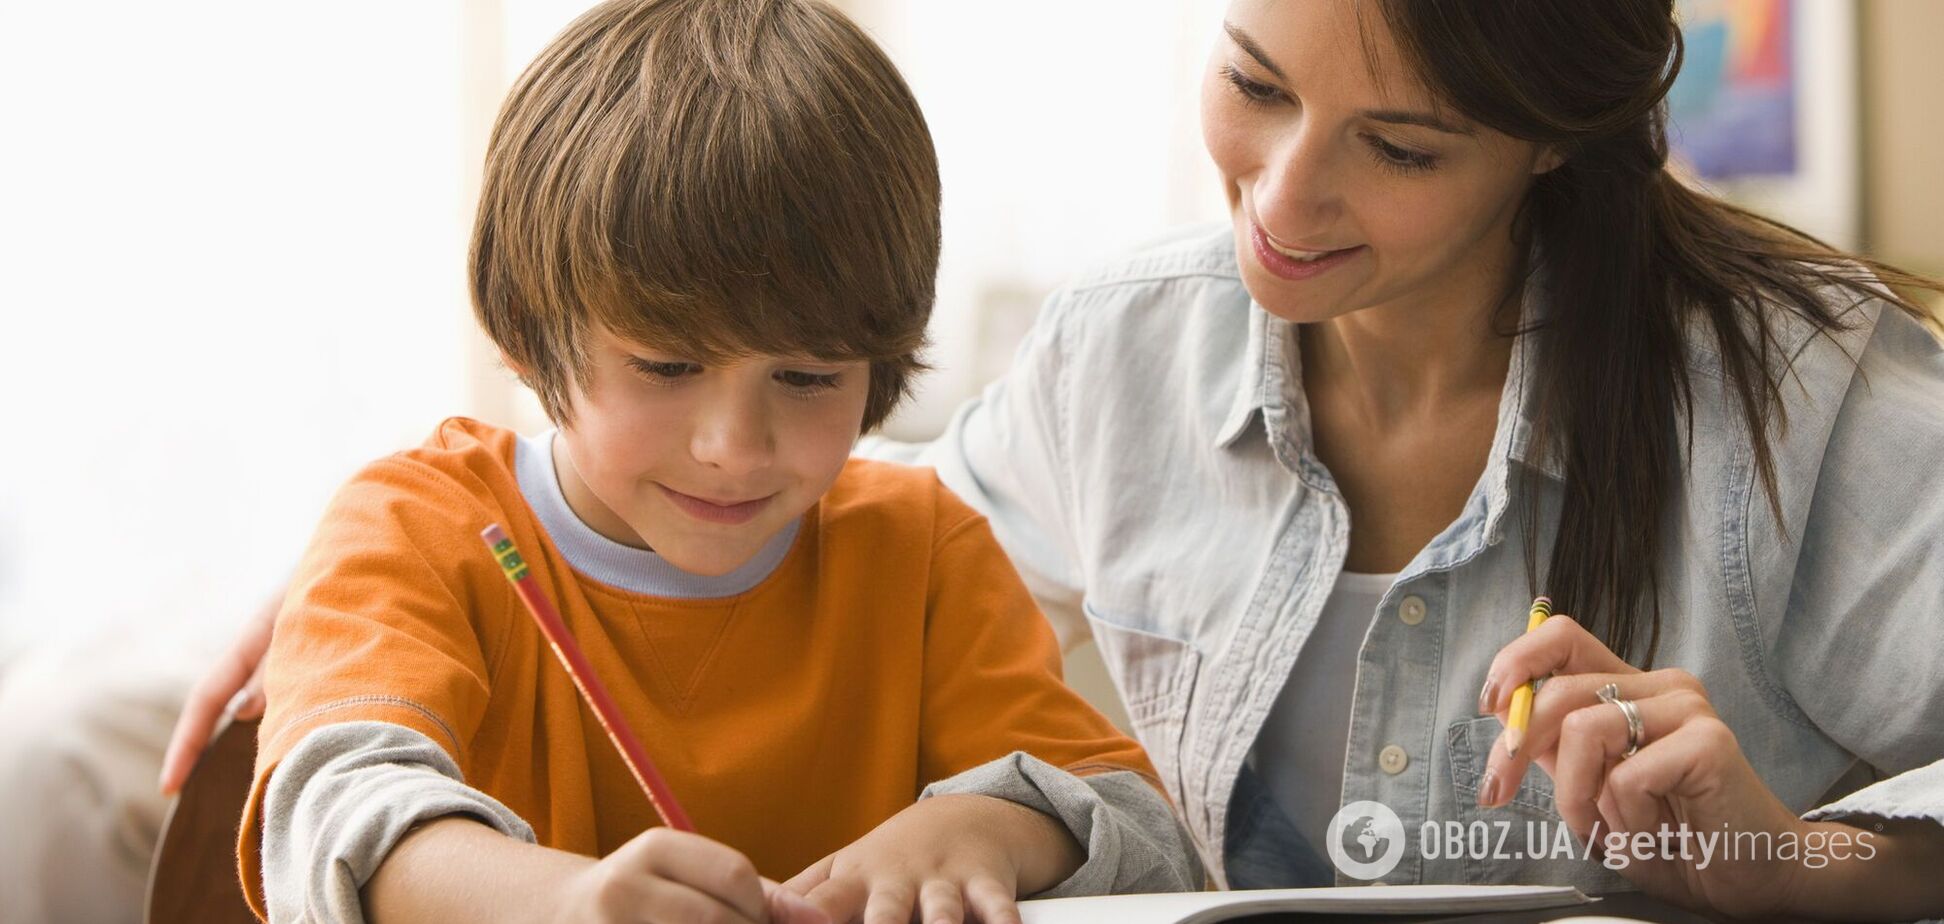 ТОП-6 советов, которые пригодятся родителям и детям во время выполнения домашних заданий